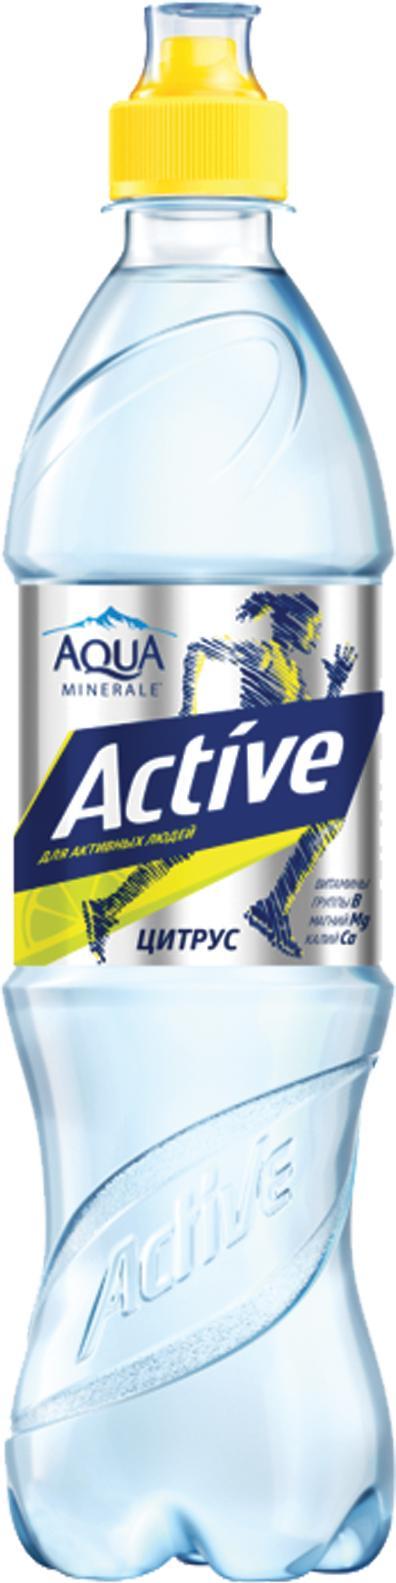 Вода Aqua Minerale Active Цитрус безалкогольный негазированный 500 мл., ПЭТ